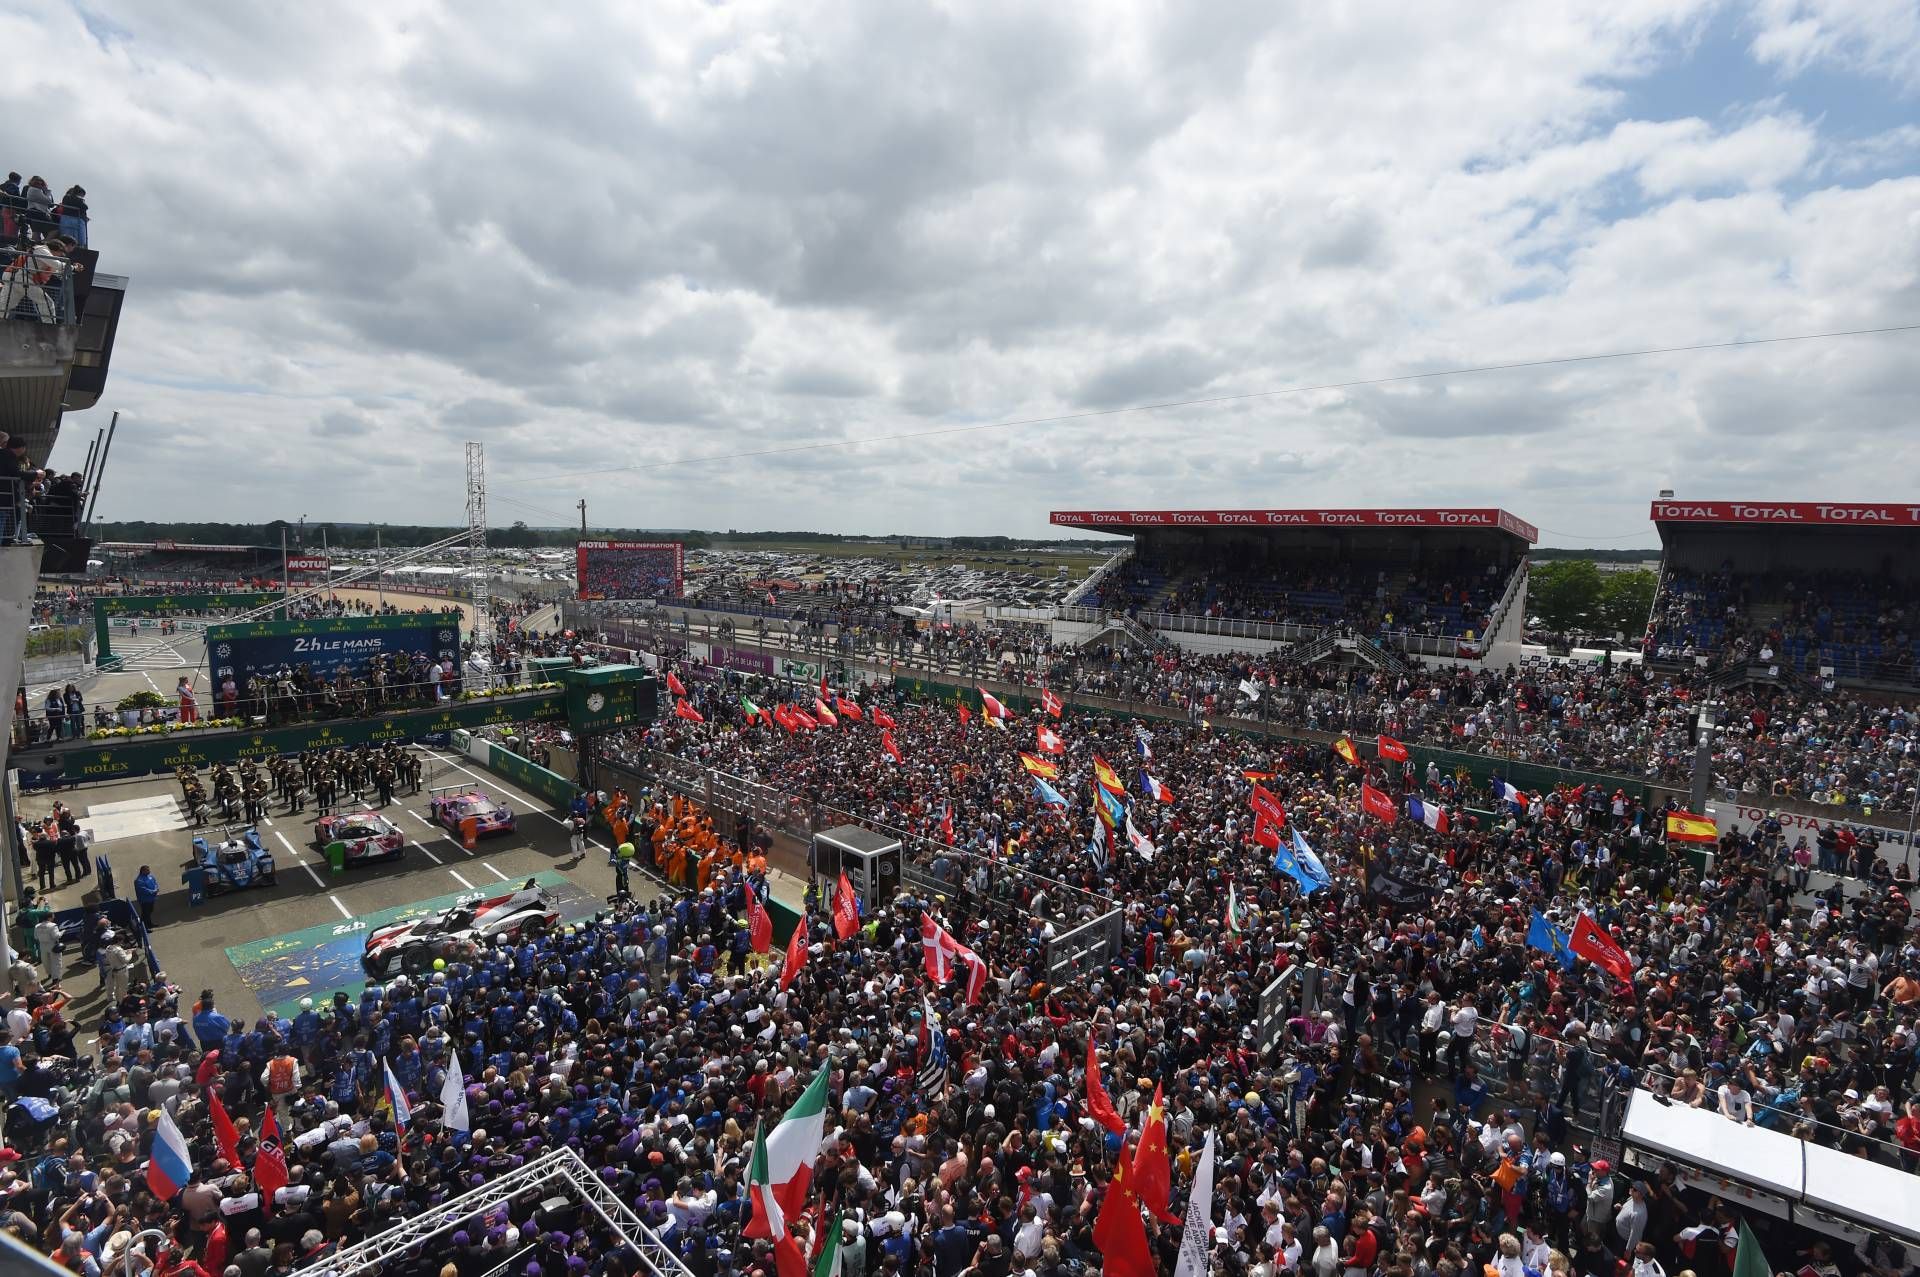 Le Mans crowd podium session